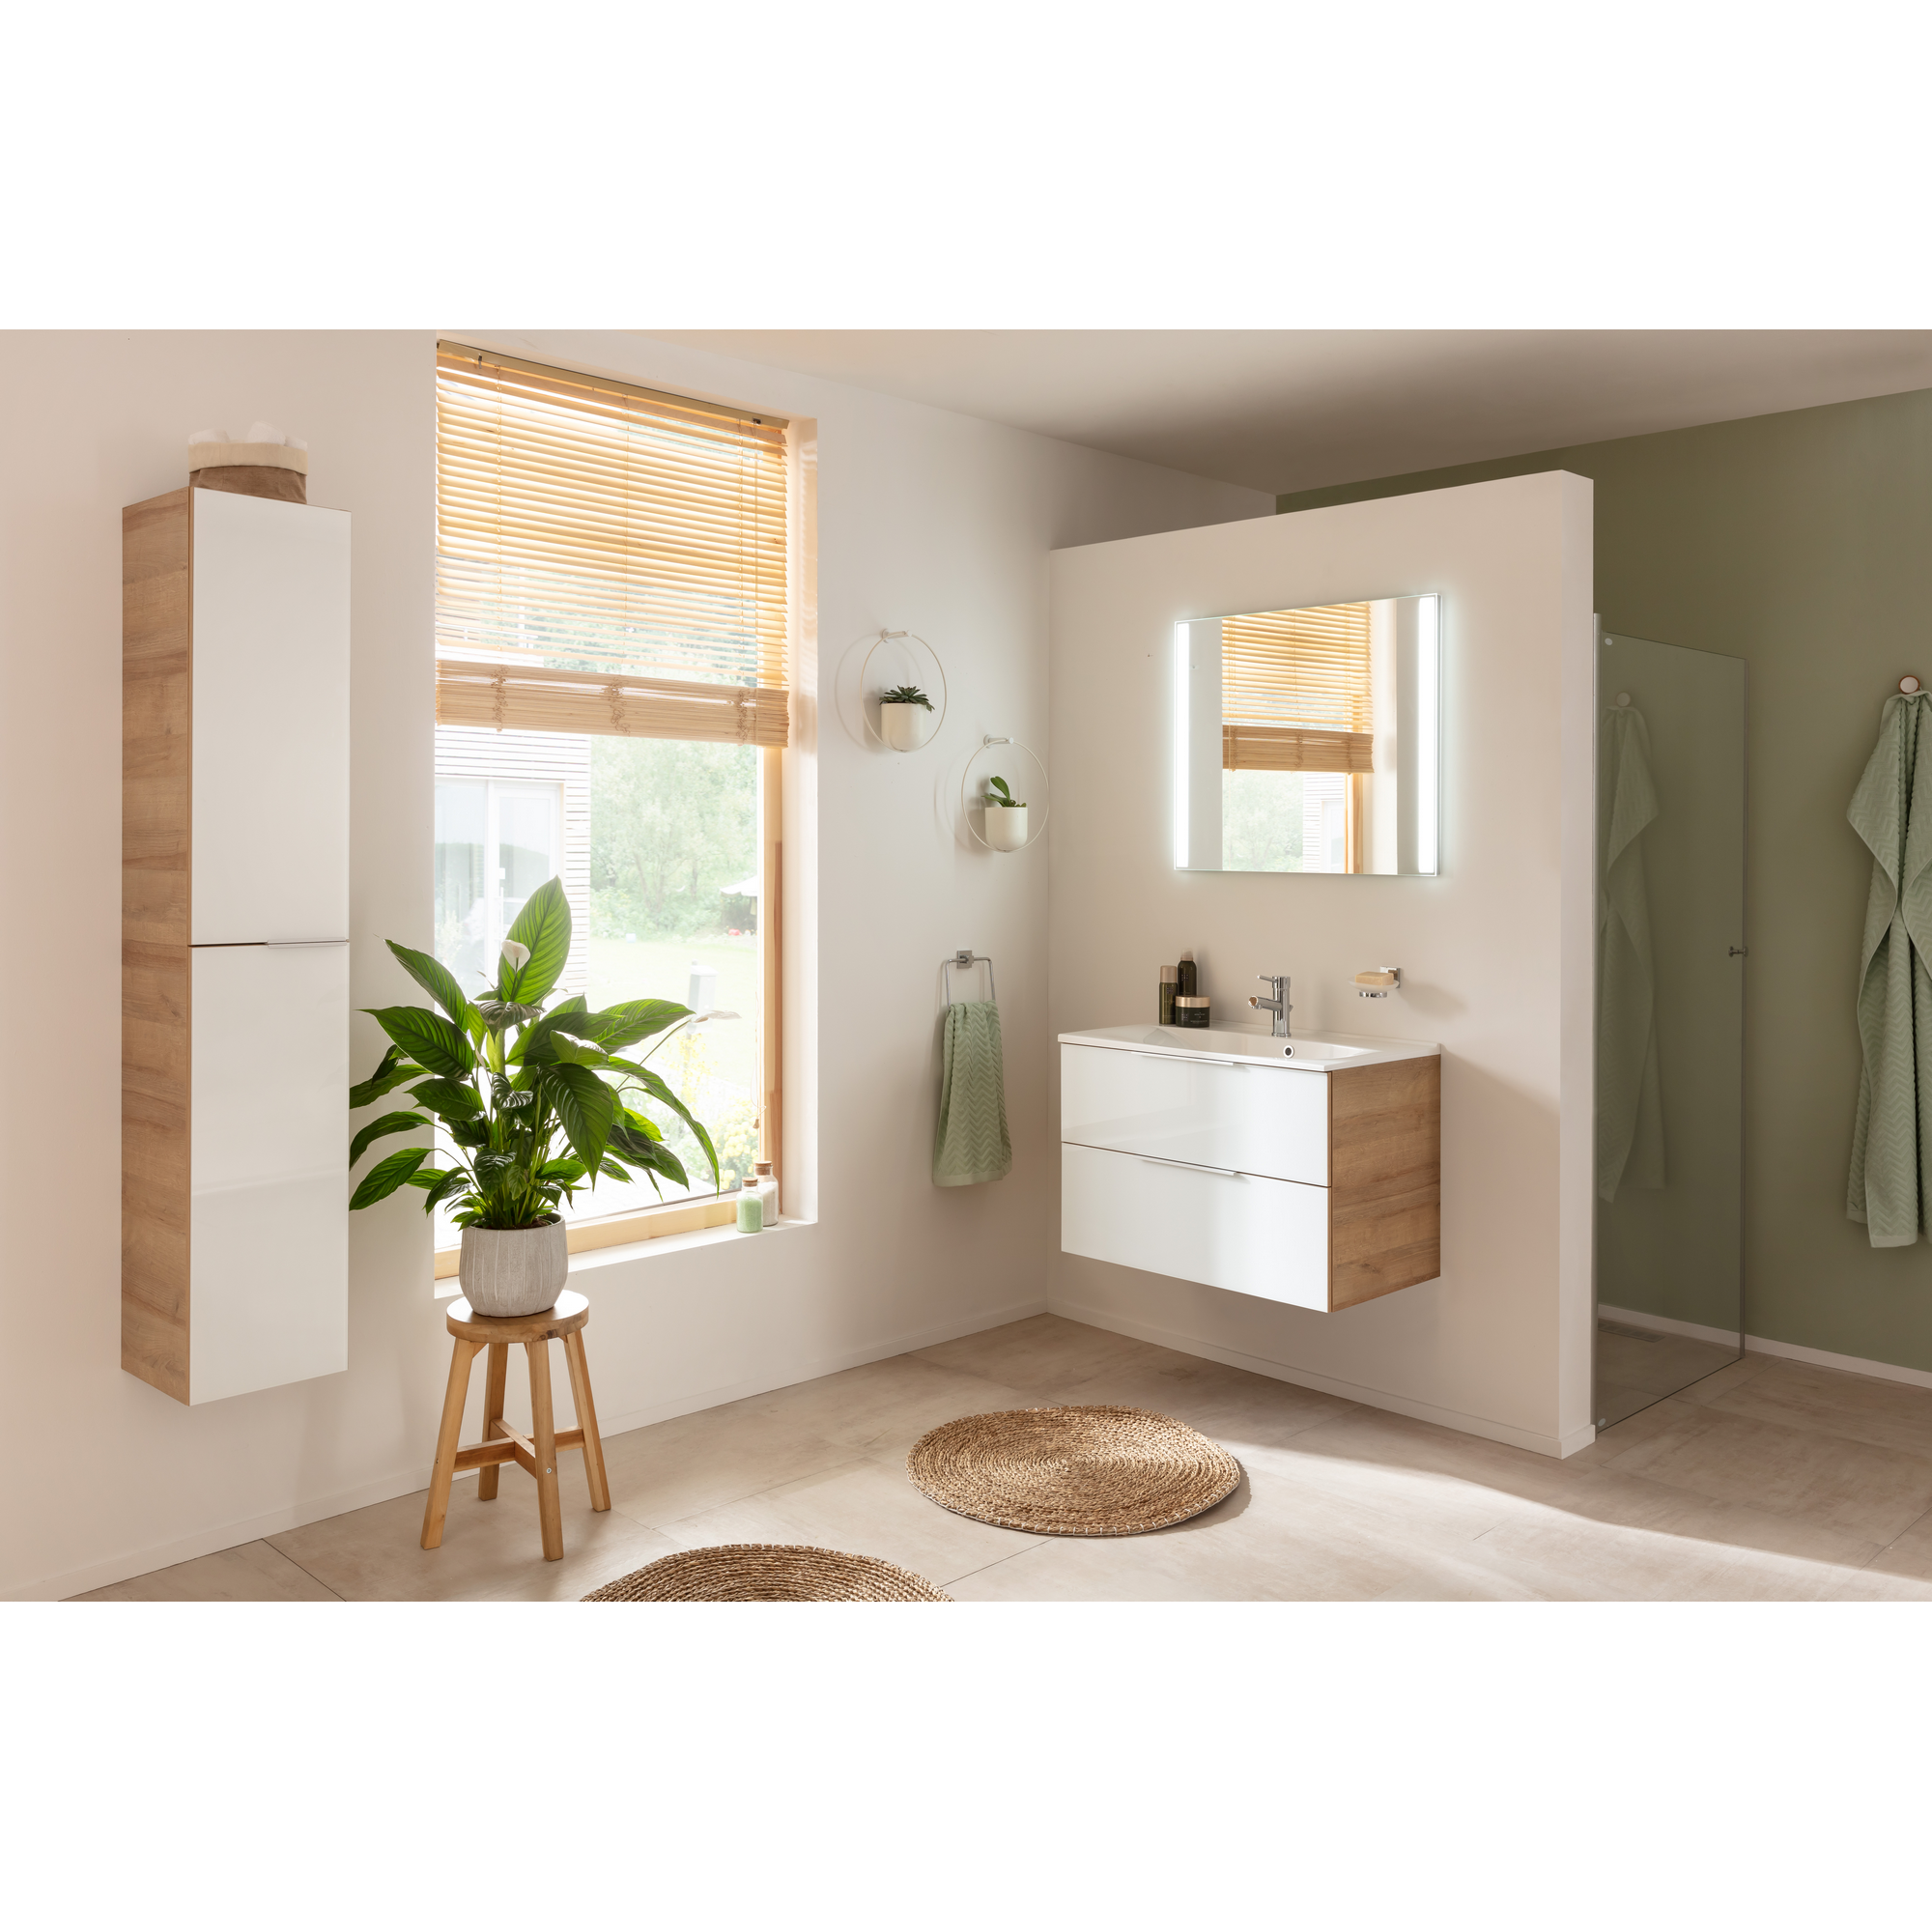 Waschbecken mit Unterschrank 'B.Brillant' Asteiche/weiß 80 x 56 x 50 cm + product picture